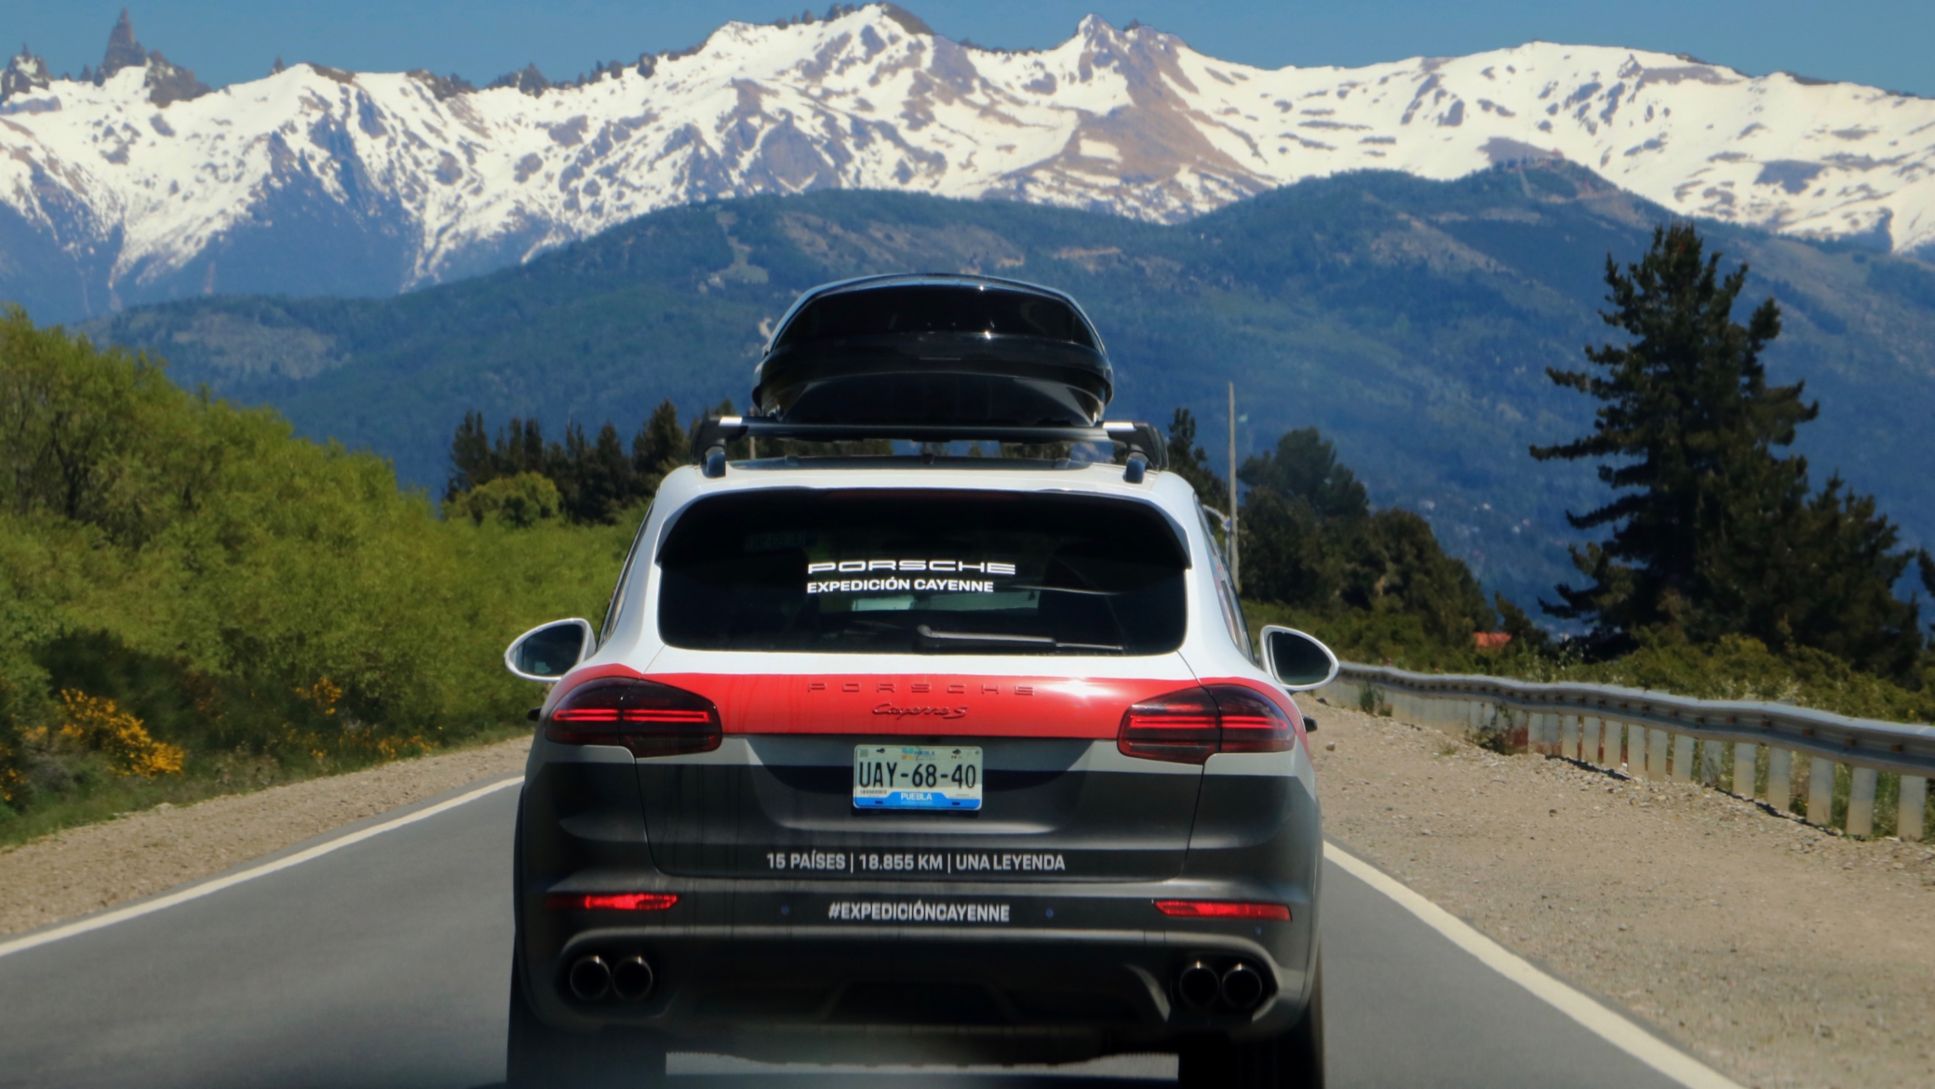 Cayenne S, Expedicion Cayenne, Andes Mountains, San Carlos de Bariloche, Argentina, 2018, Porsche AG